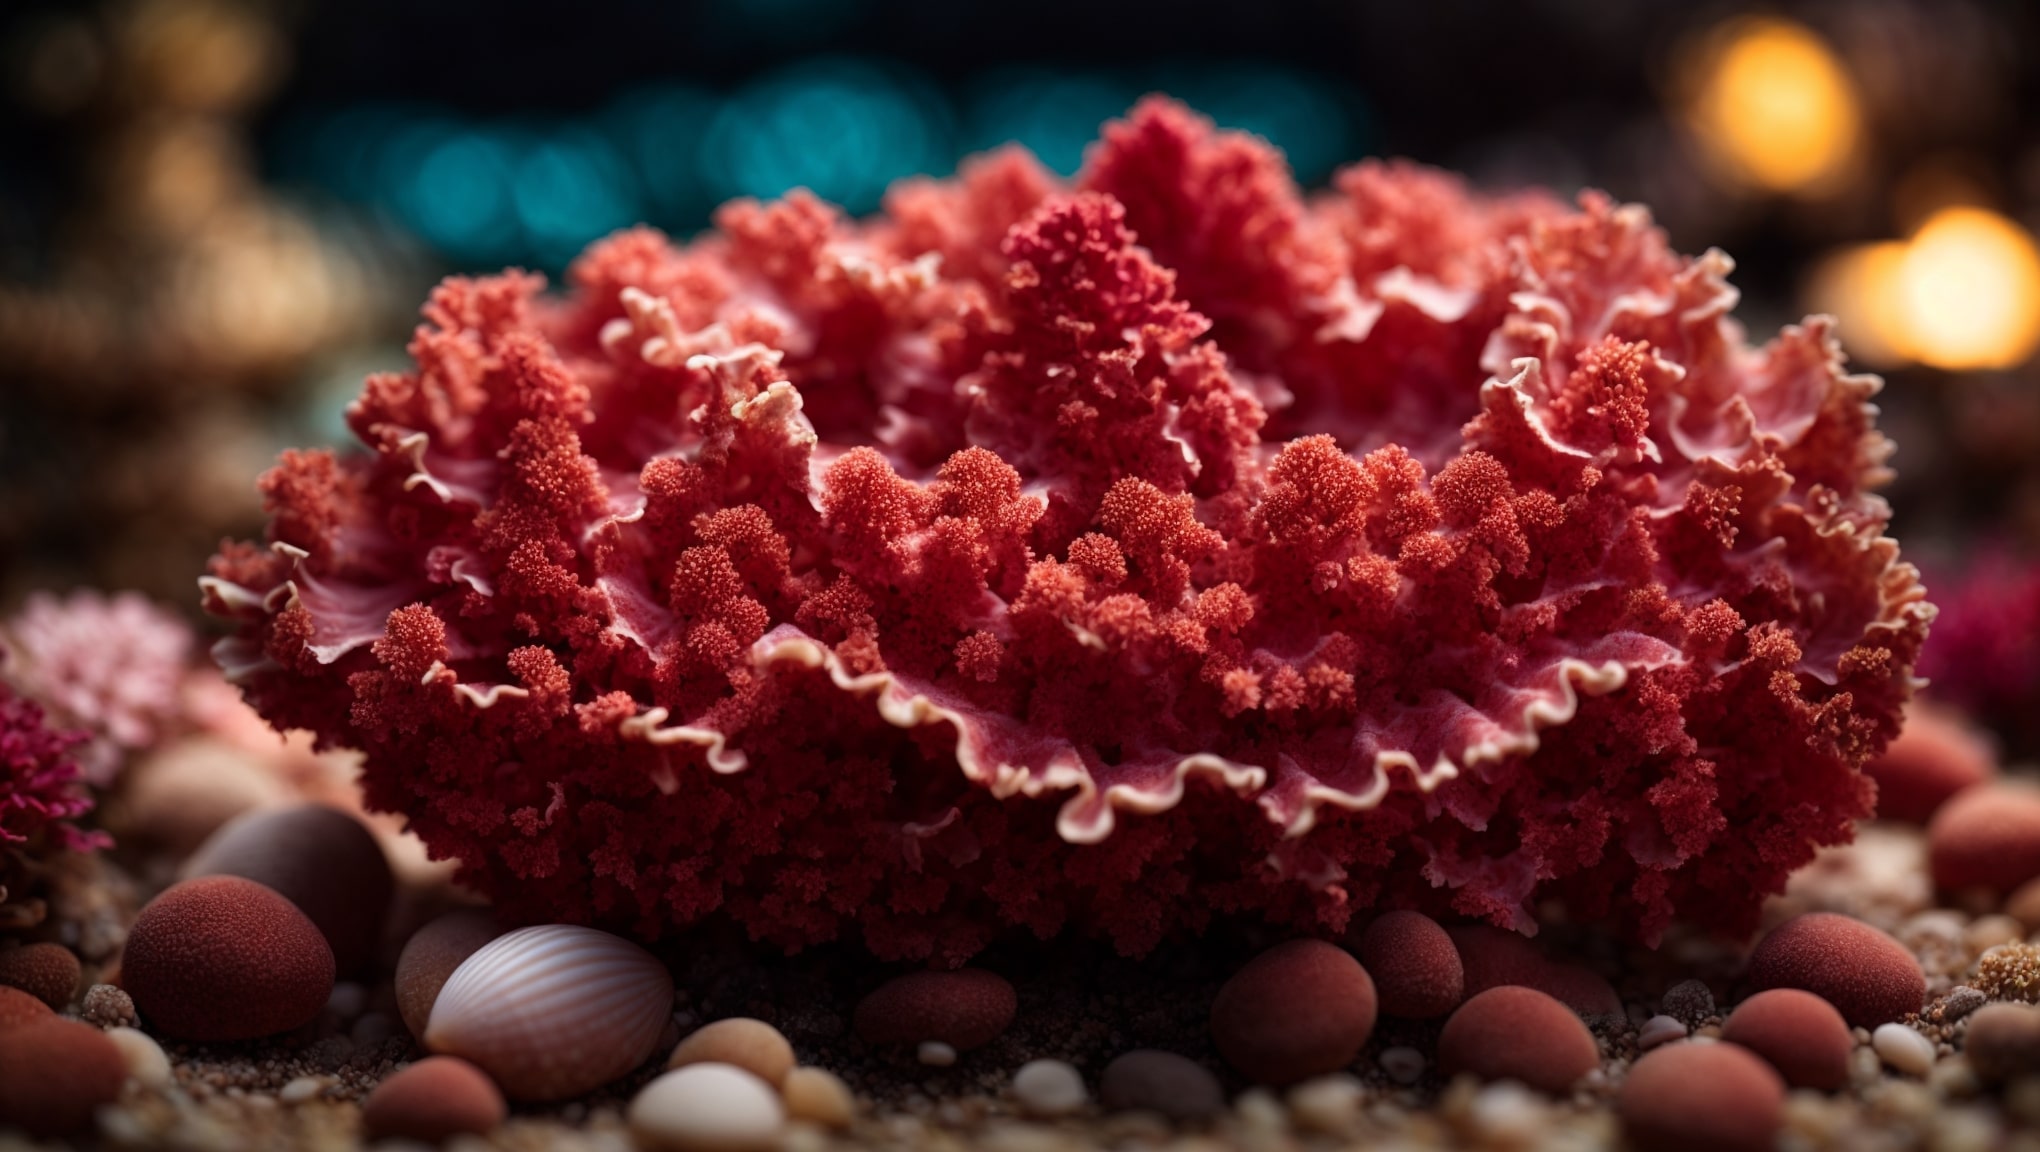 Oceanic Coral properties